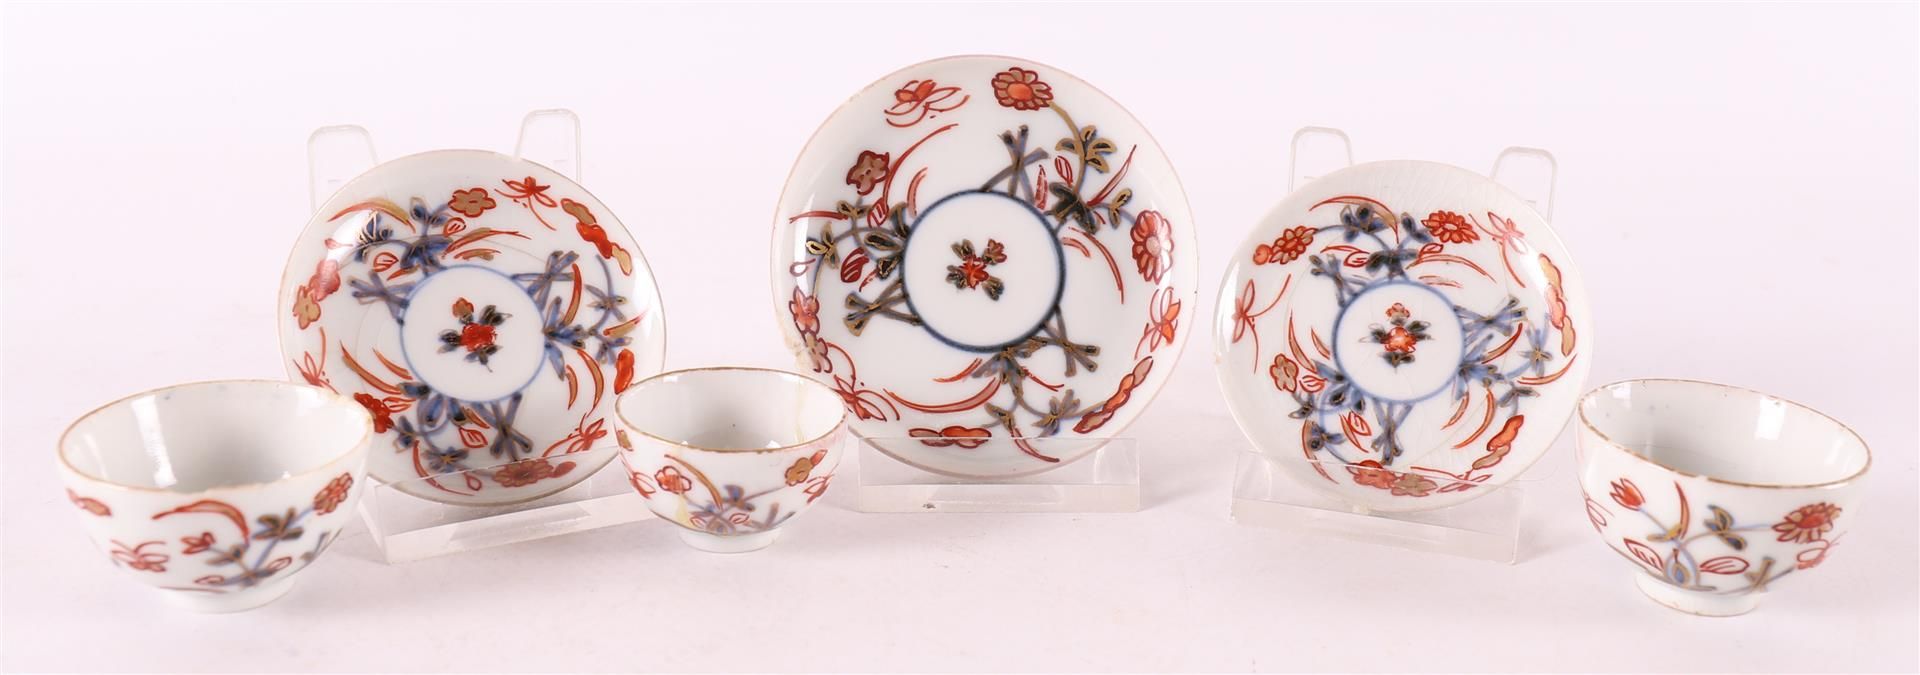 Three various porcelain Imari miniature bowls and saucers, Japan, Edo